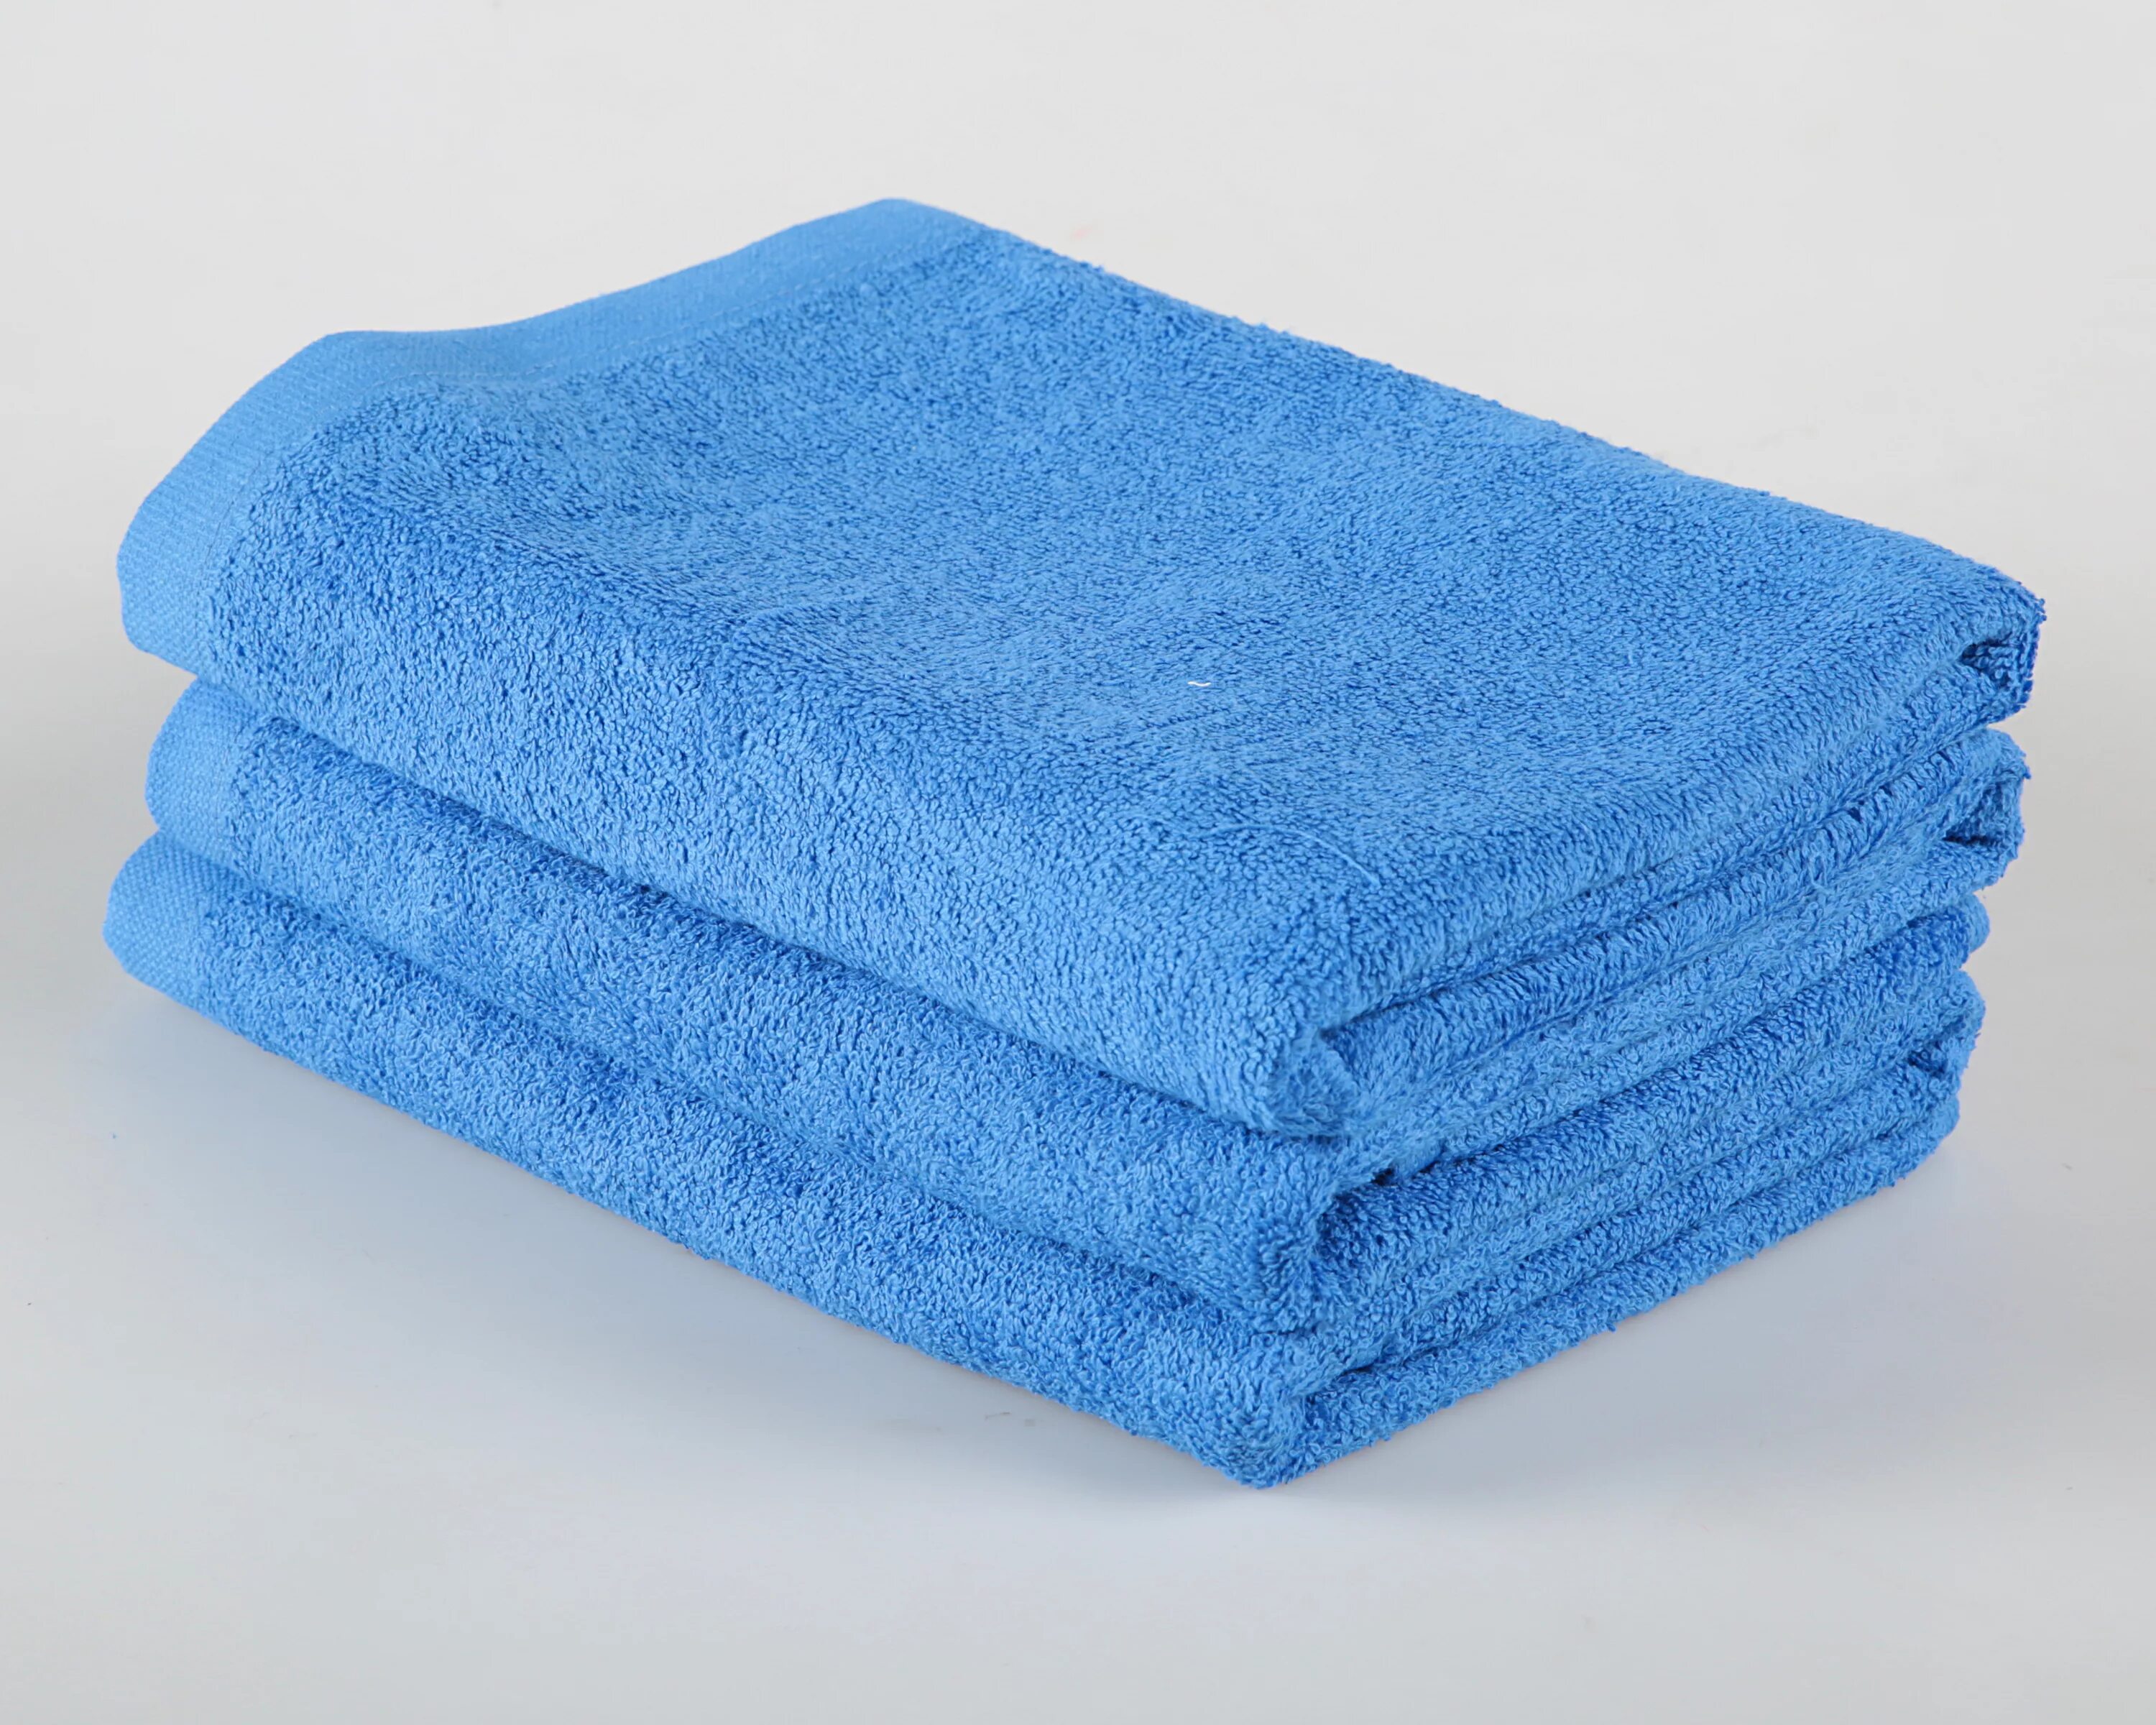 Полотенце 450 гр/м2 40х70. Mona Liza полотенца. Полотенце 70 140 см махровое 450 гр/м2. Синее полотенце. Полотенце 50х100